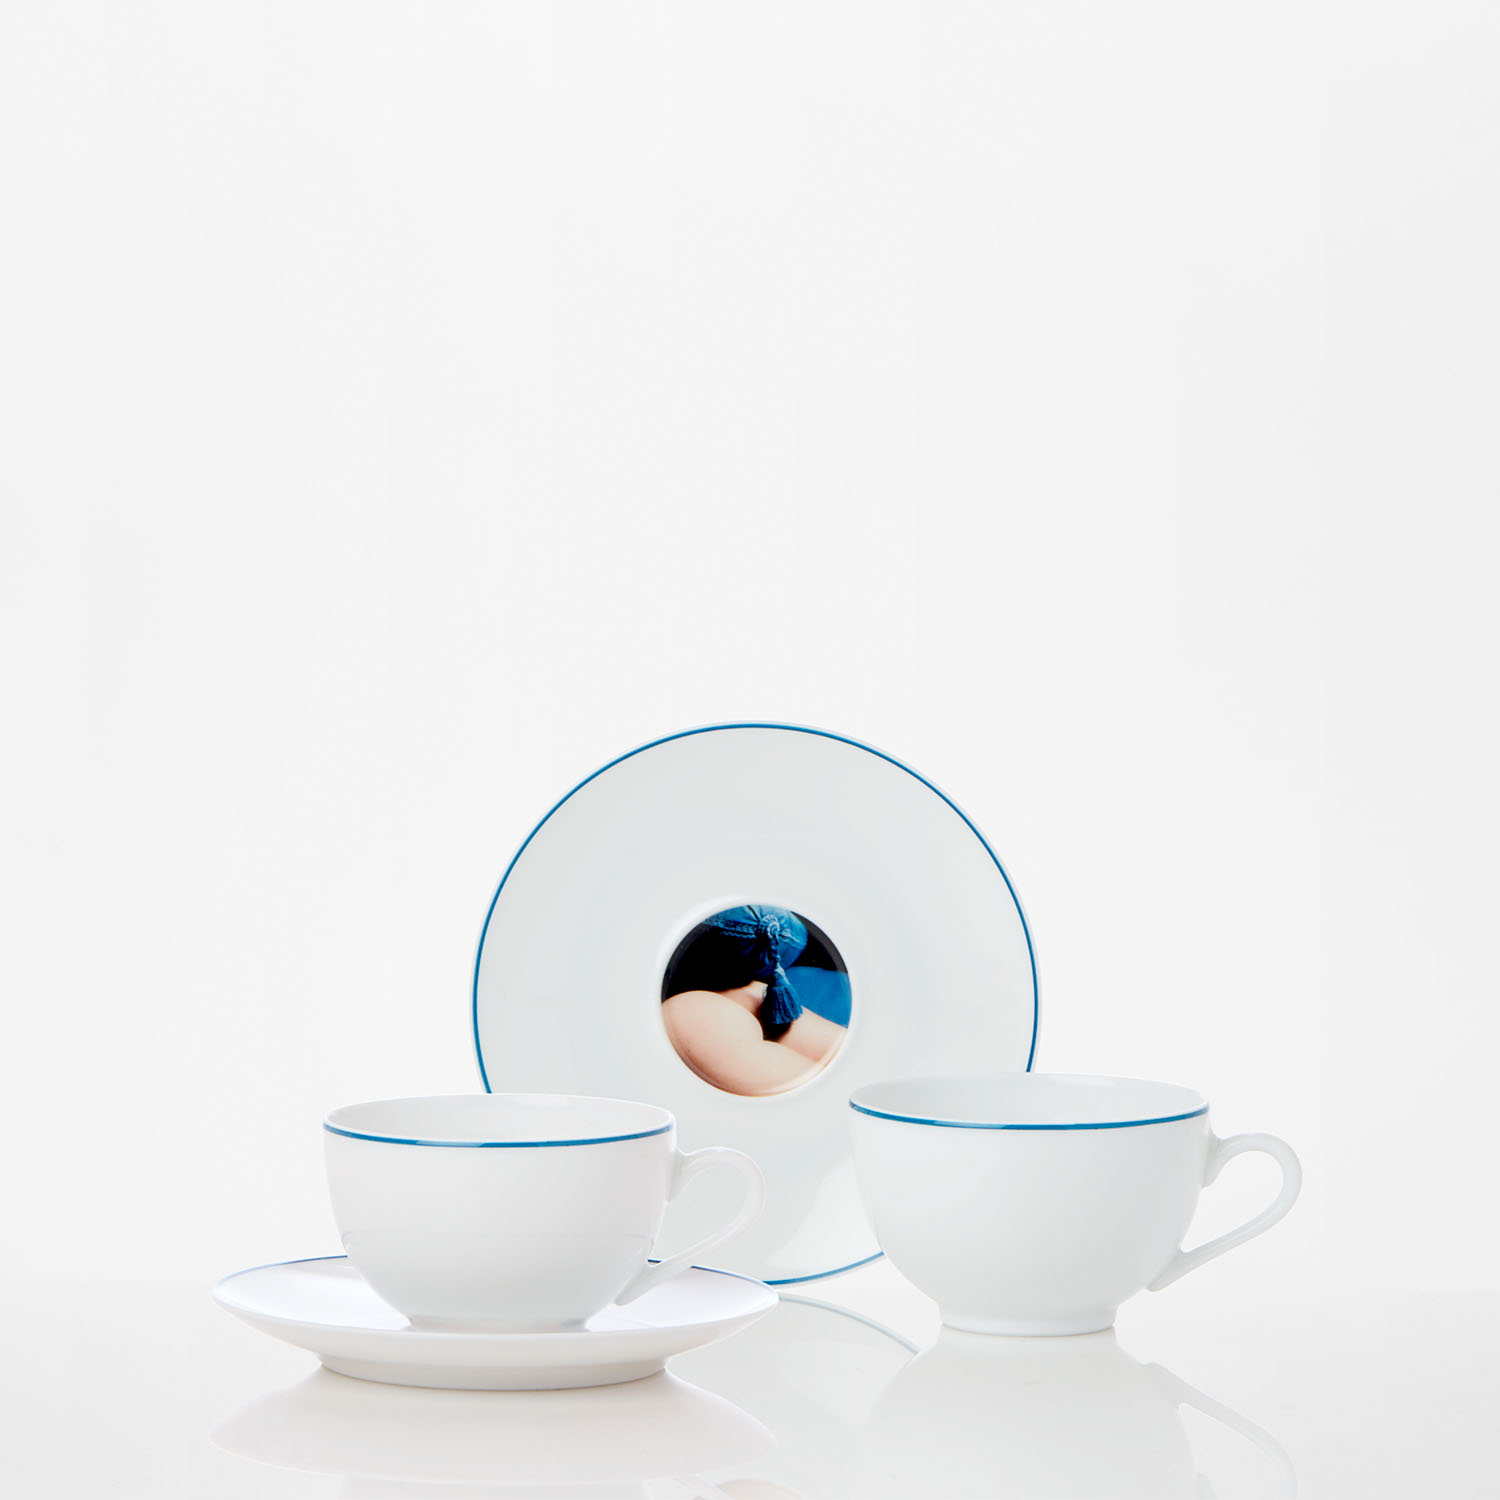 Tea Cup - Les Françaises by the photographer Sonia Sieff | Maison ...